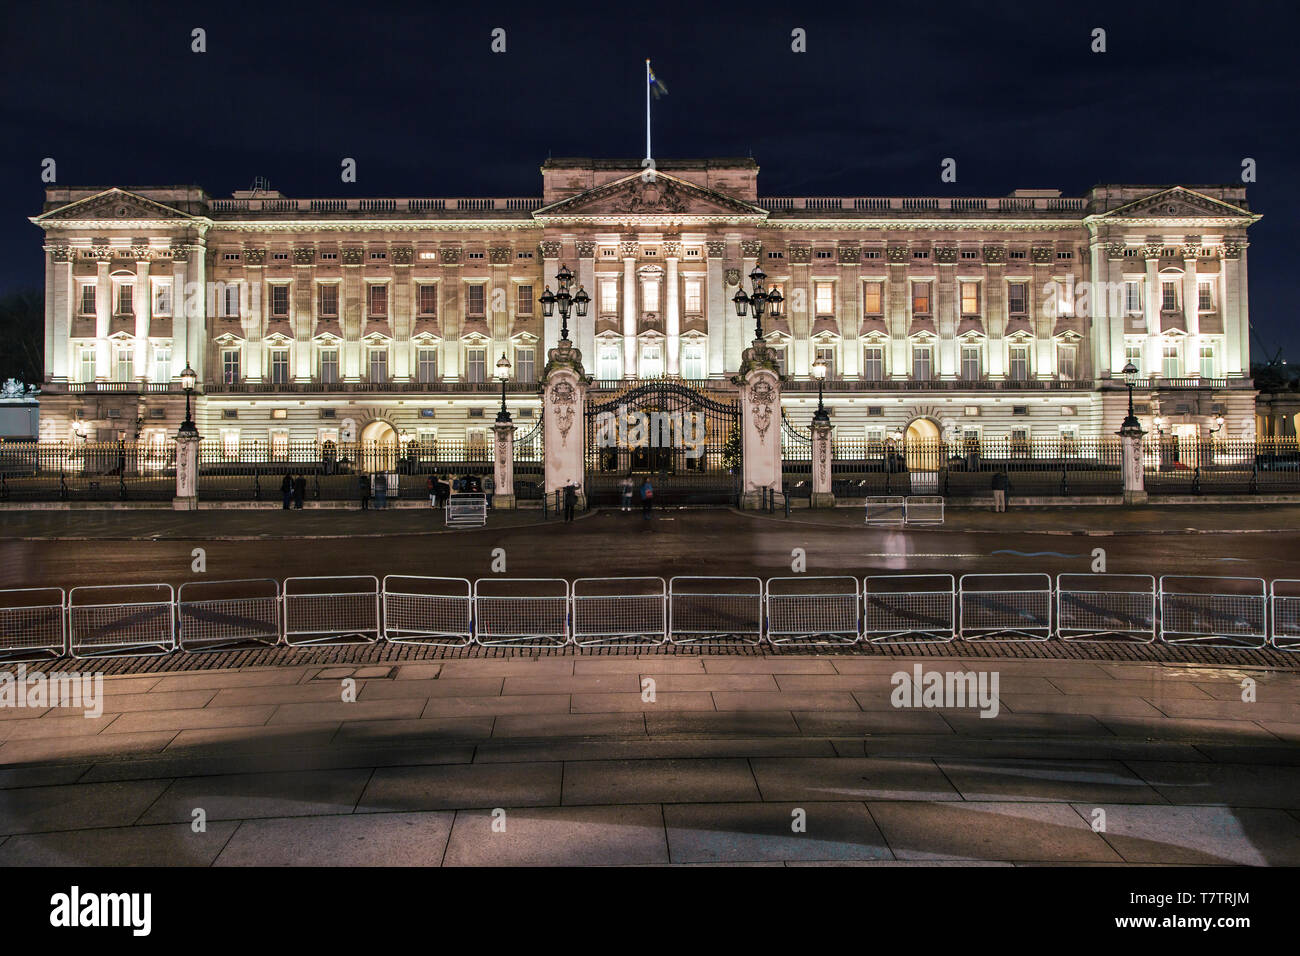 El Palacio de Buckingham por la noche, Londres, Reino Unido. Foto de stock